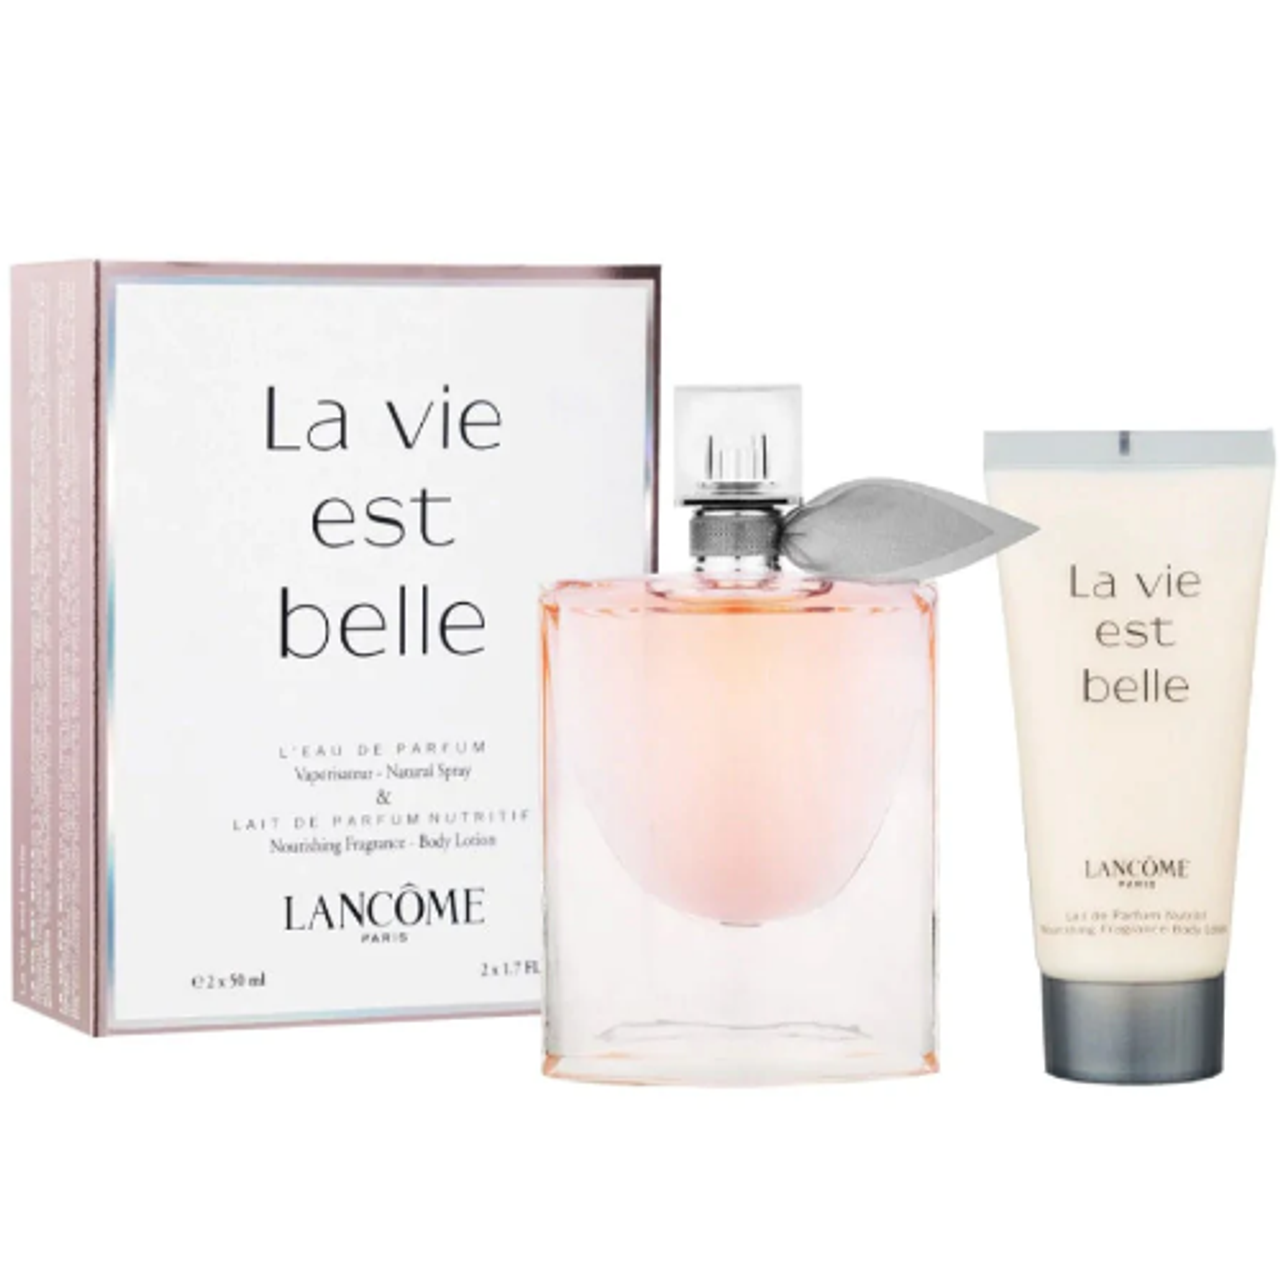 Buy La Vie Est Belle by LANCOME PARIS for Women 3.4 oz L'Eau de